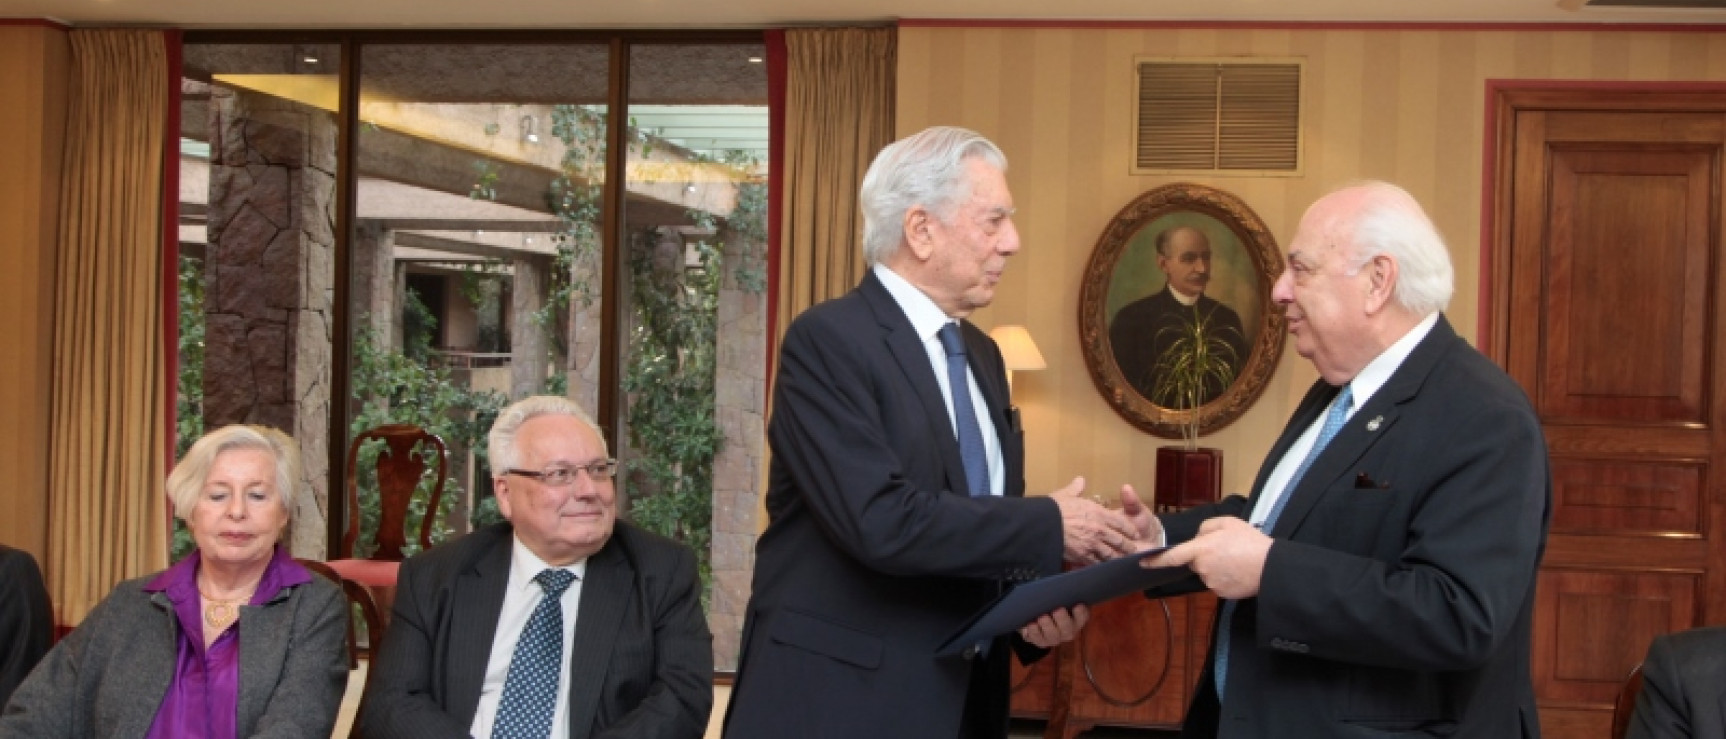 La Academia Chilena de la Lengua nombra a Mario Vargas Llosa miembro honorario.